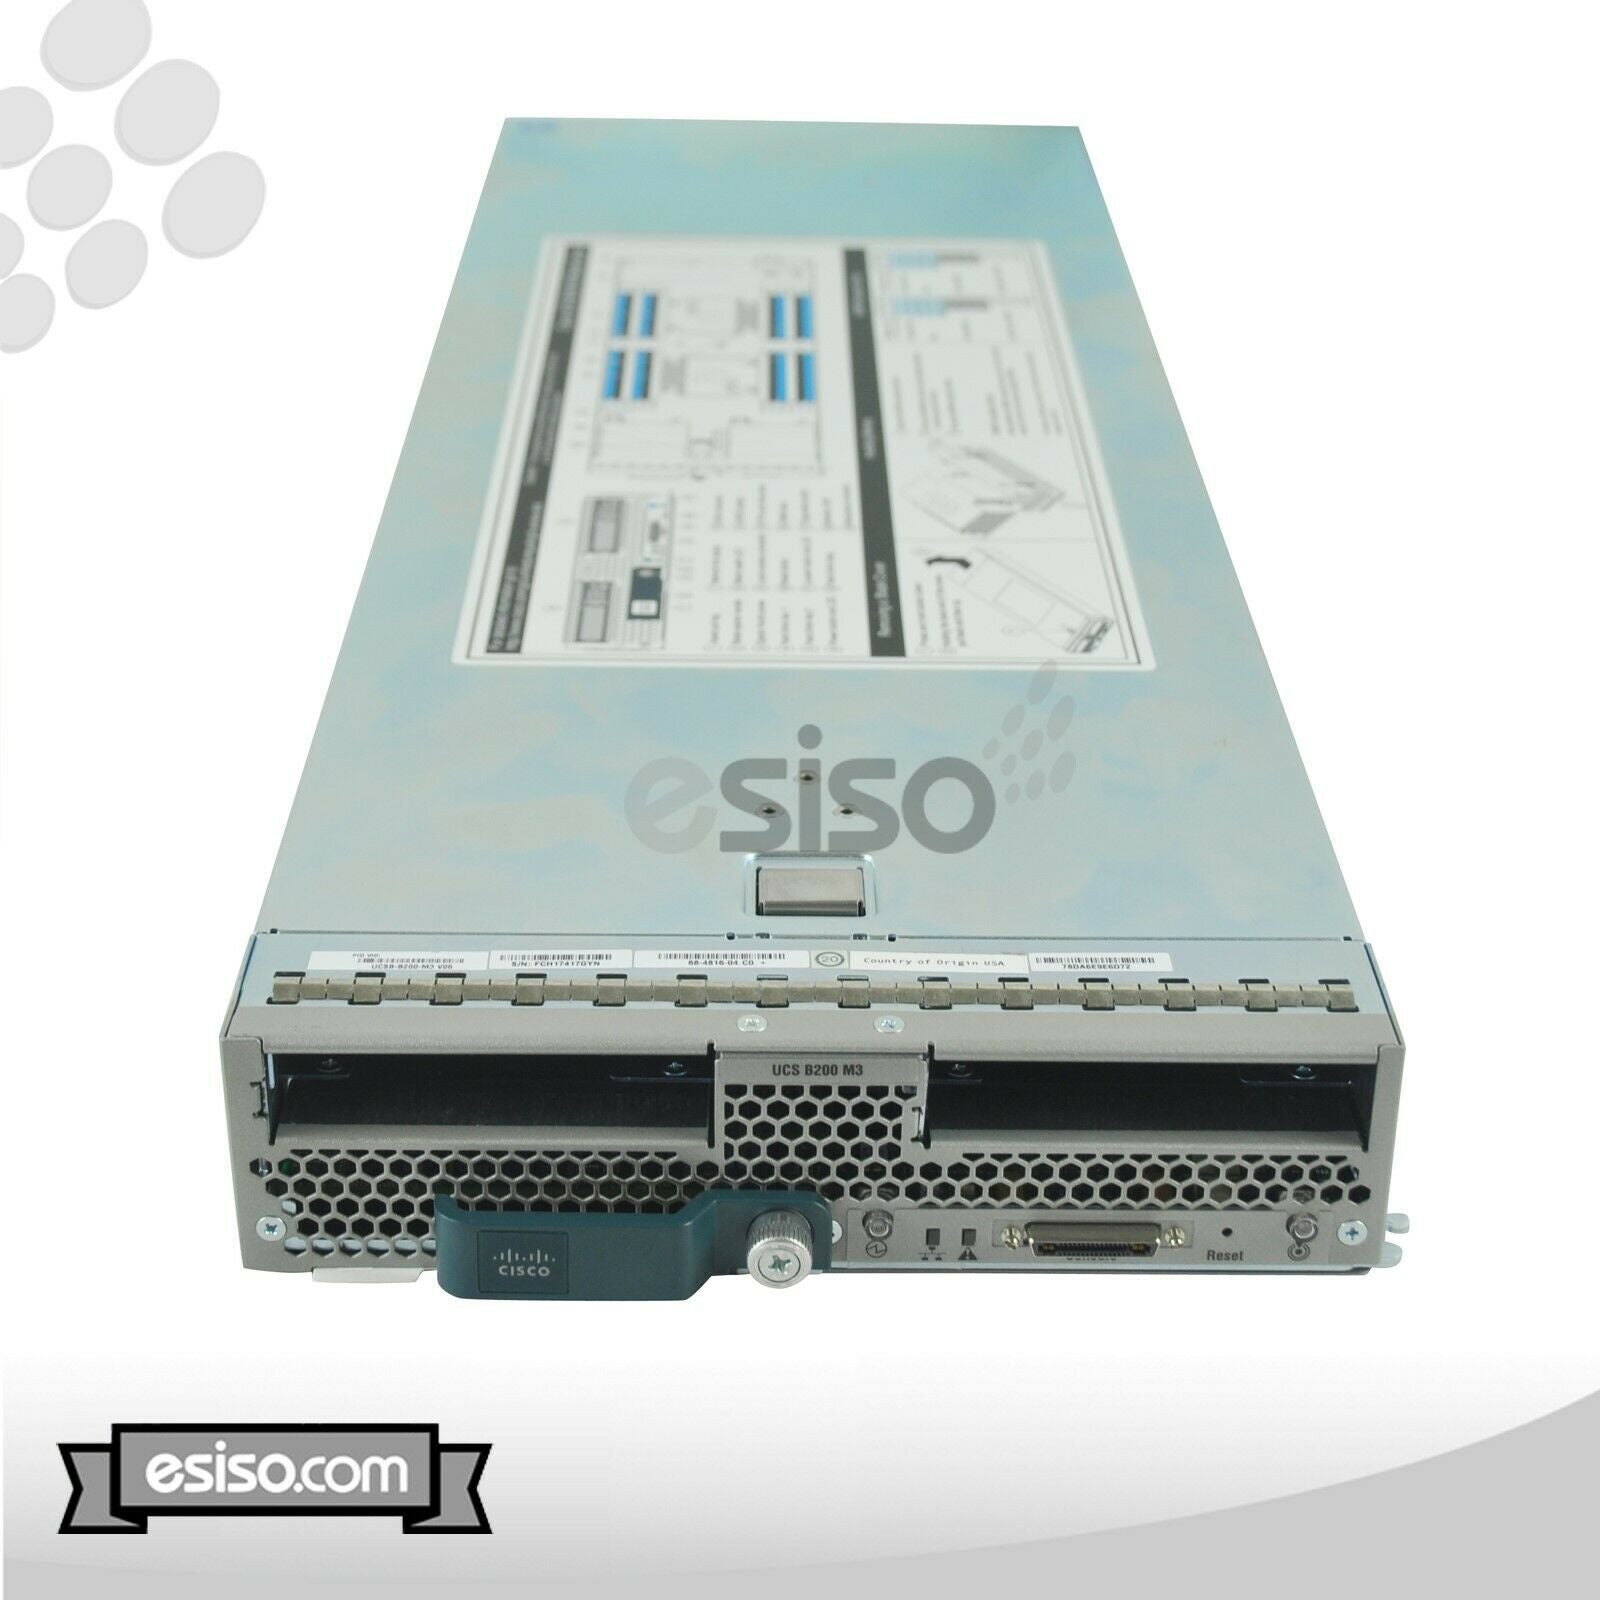 CISCO UCS 5108 CHASSIS 8x B200 M2 2x 6 CORE X5650 2.66GHz 64GB RAM NO HDD